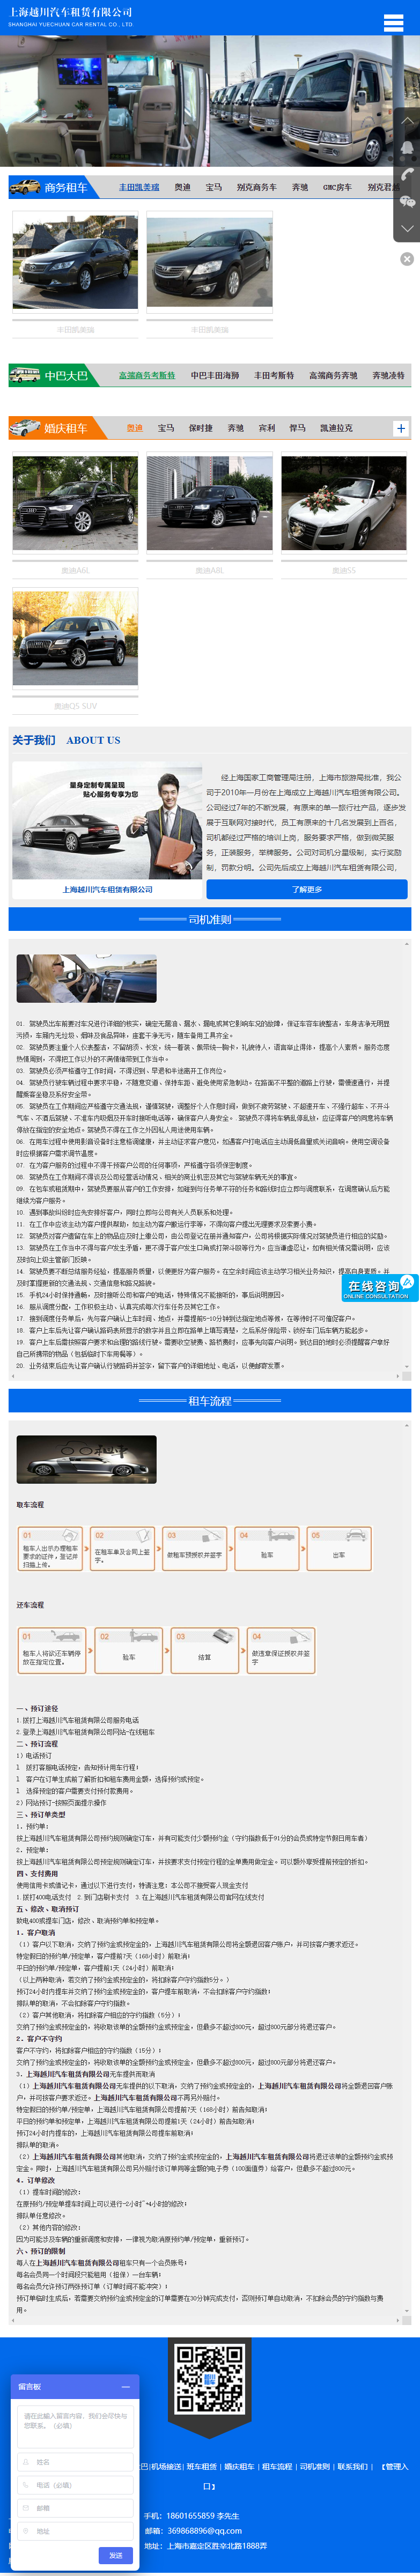 上海越川汽车租赁有限公司网站案例